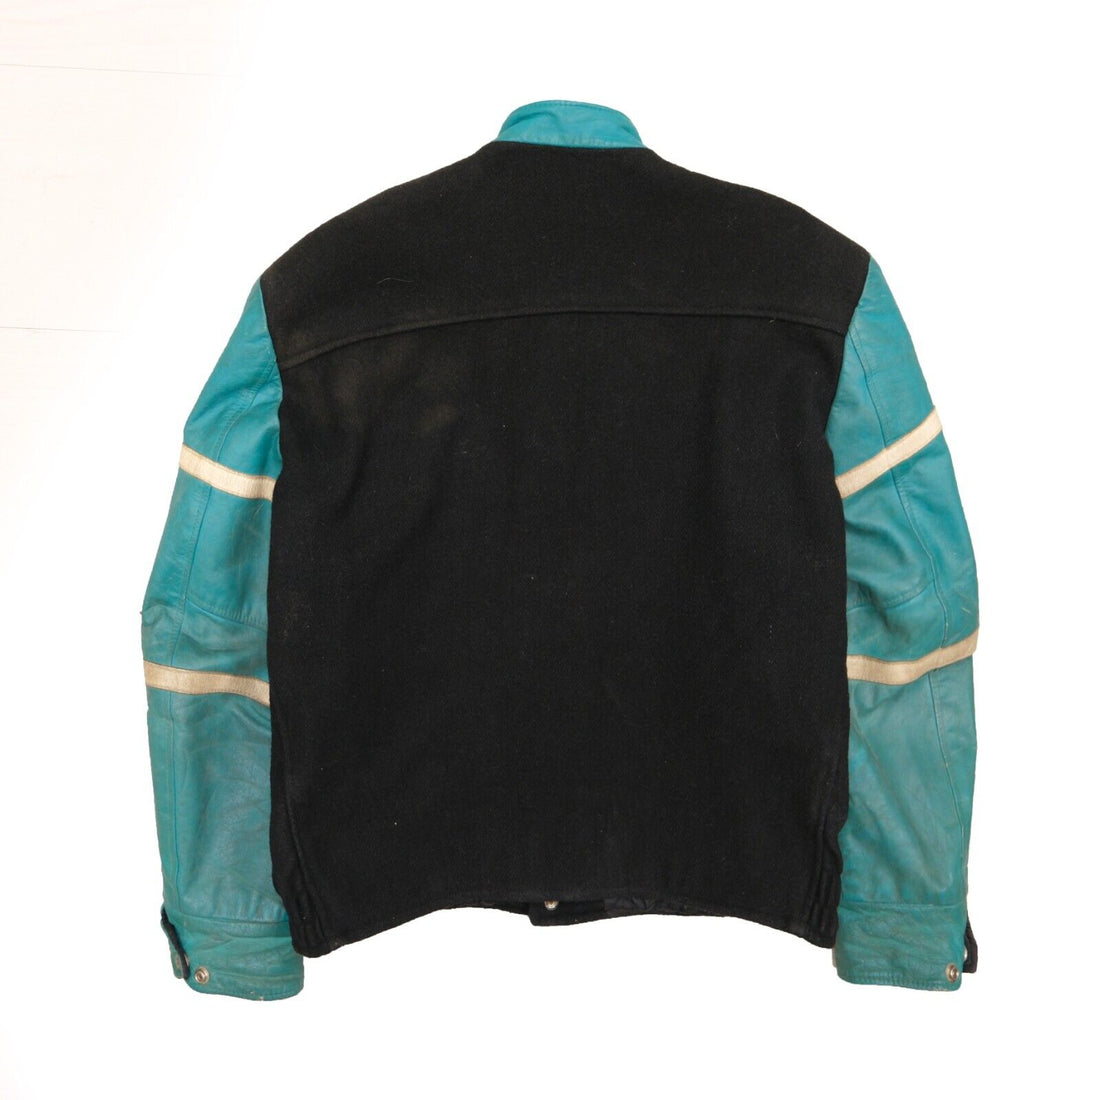 Vintage Mooney Grenon Oilers Lacrosse Leather Wool Varsity Jacket Size 48